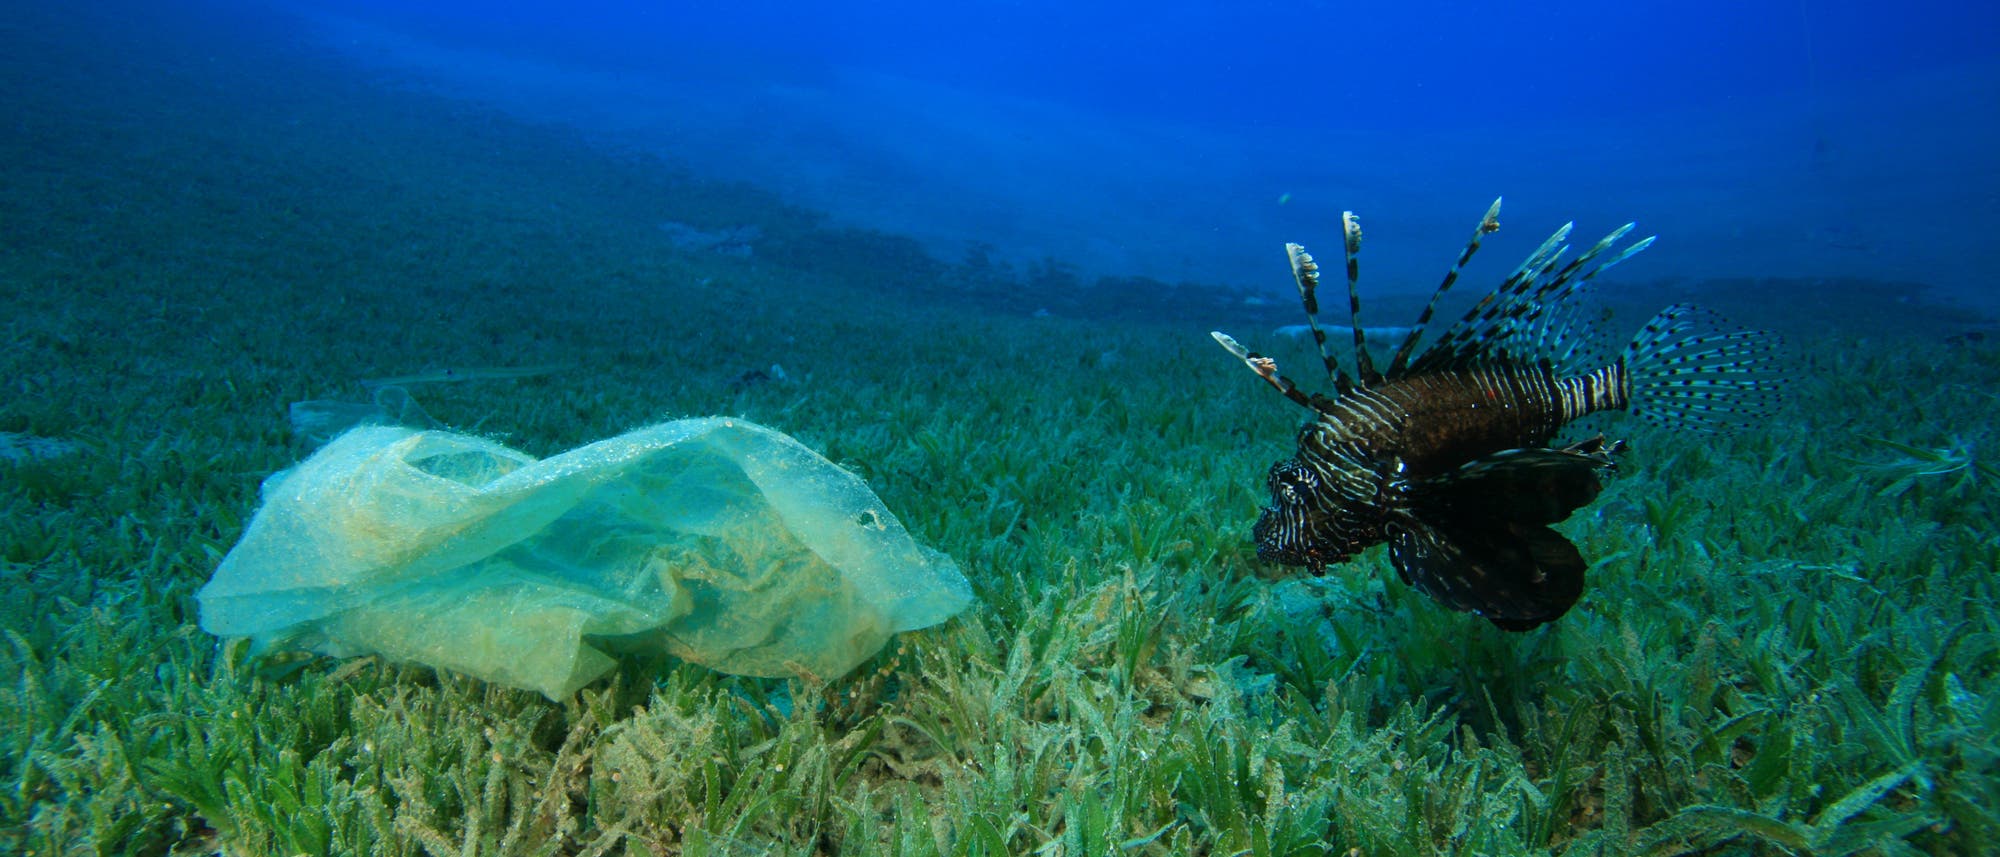 Feuerfisch inspiziert Plastiktüte im Meer (Symbolbild)